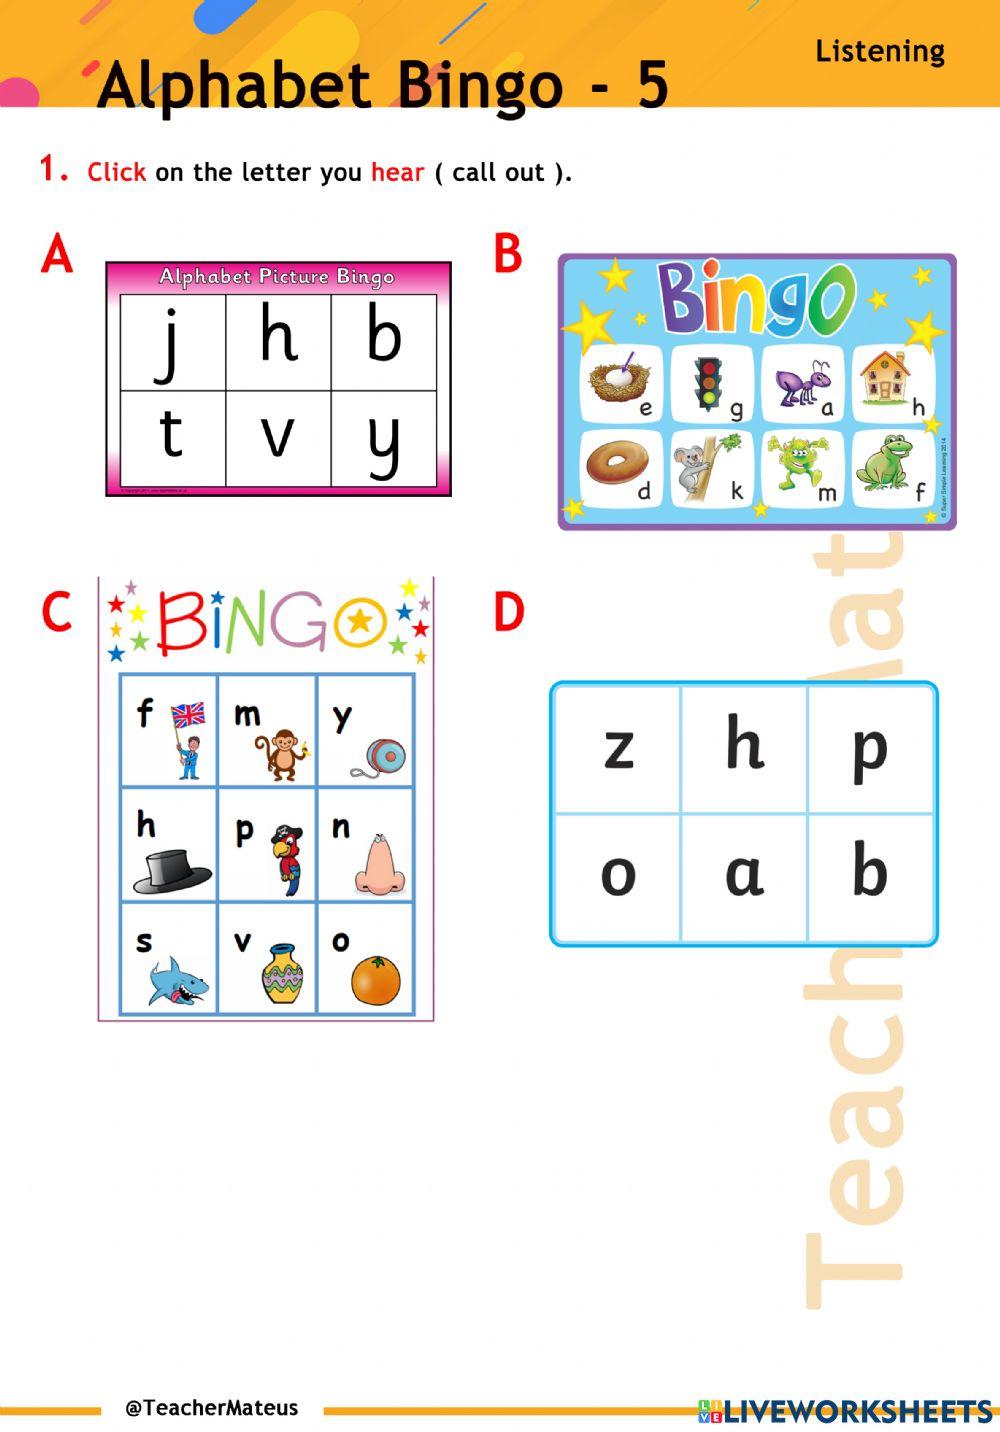 Alphabet Bingo - 5